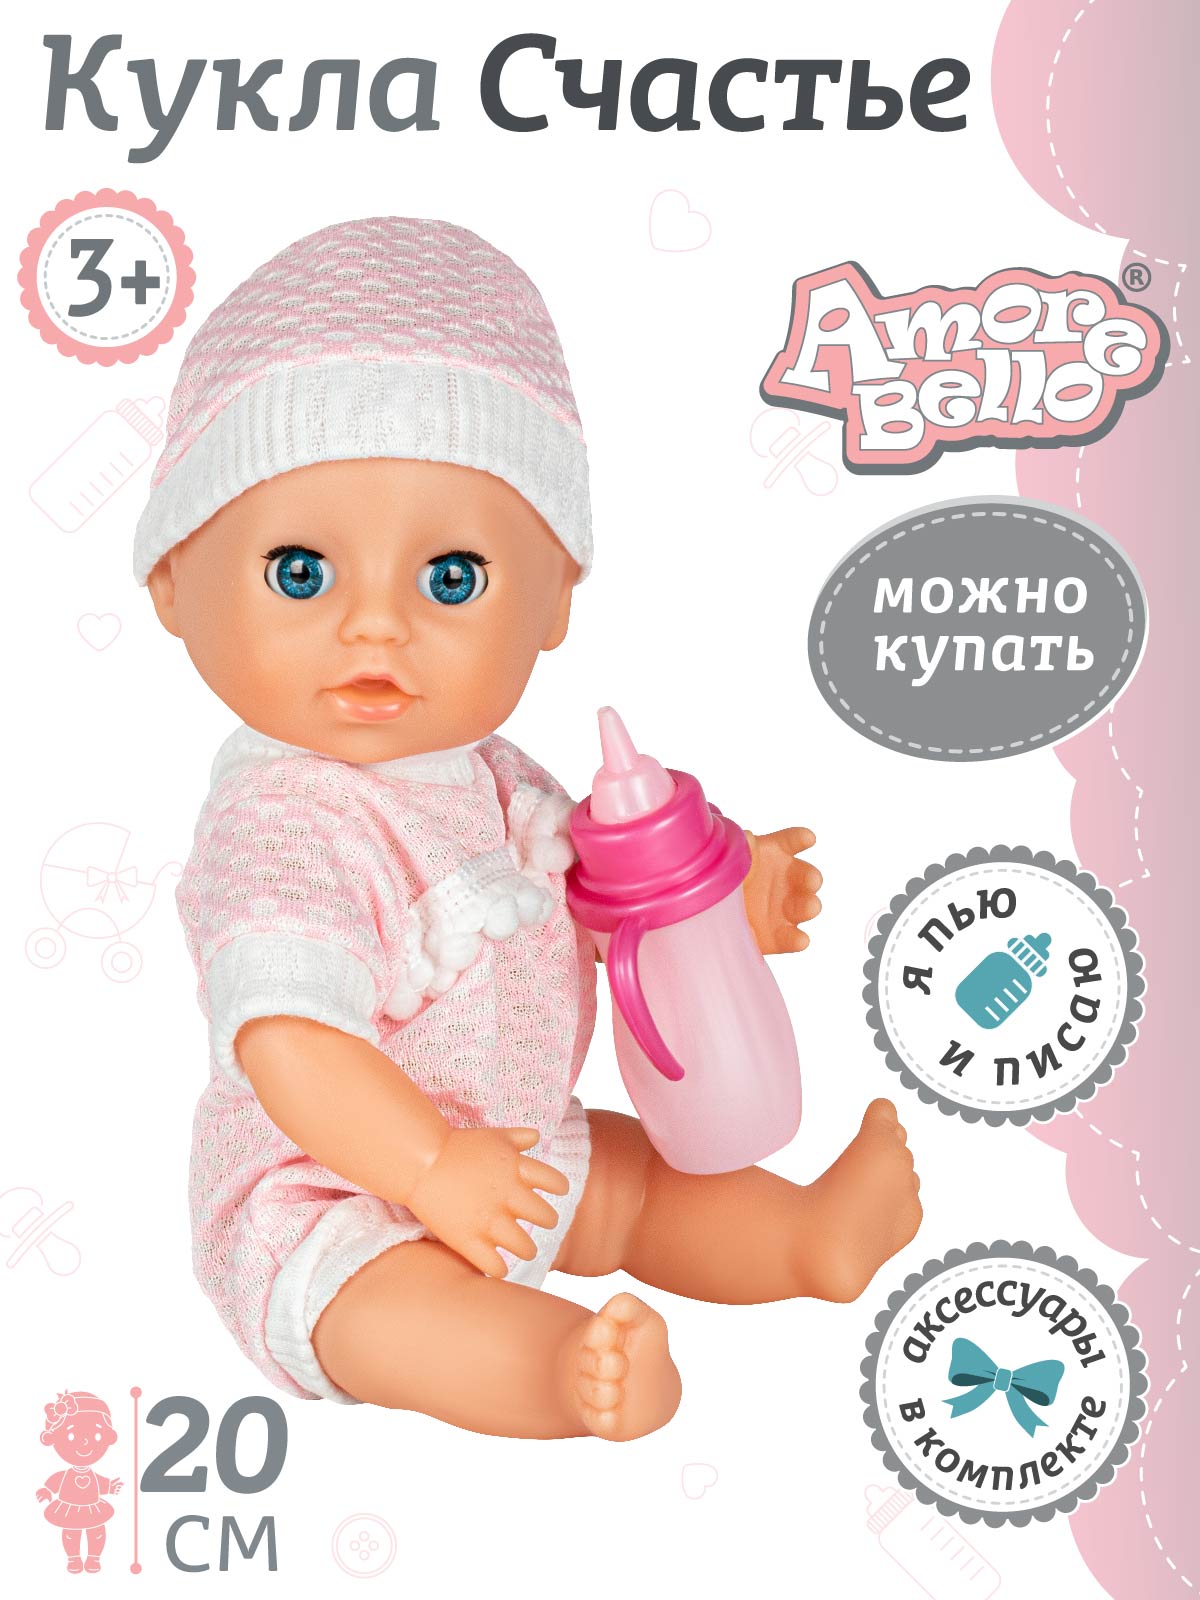 Кукла ТМ Amore Bello, серия Счастье, пьет/писает, аксессуары, 20 см, JB0211070 кукла выбери настроение… счастье